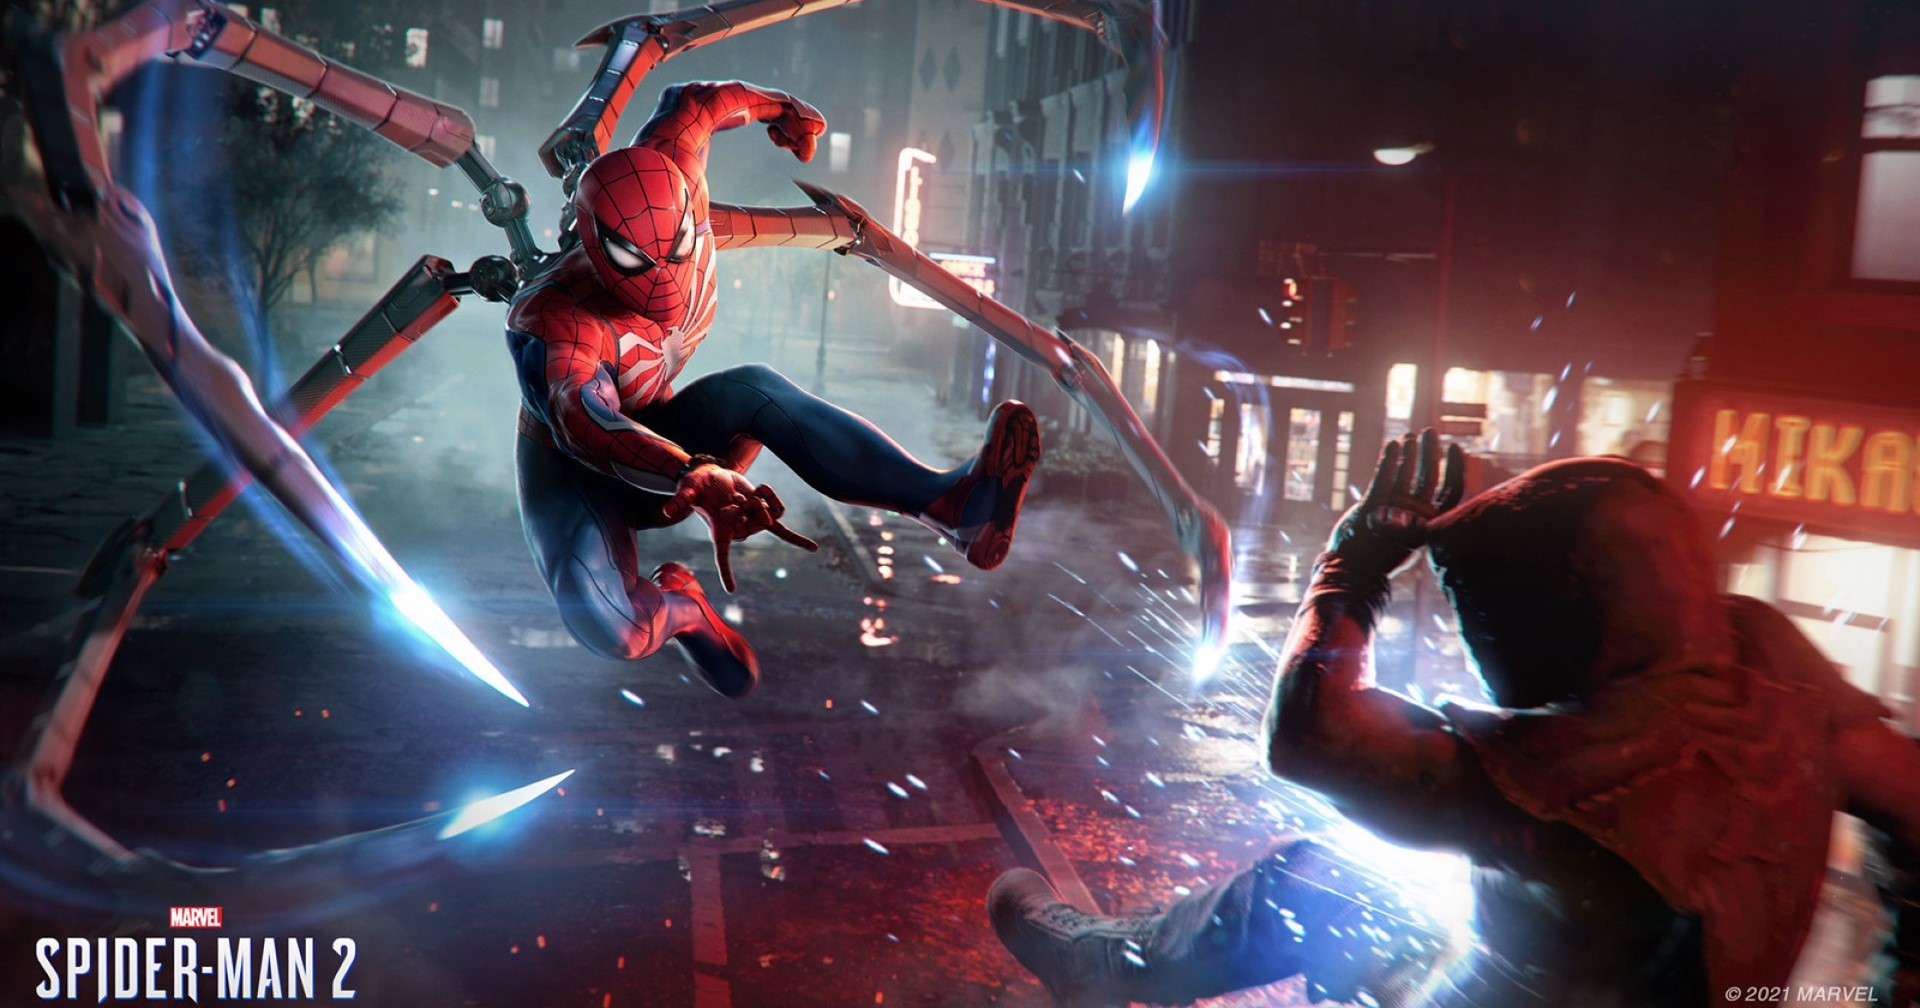 ประธาน Sony บอกเกม Marvel’s Spider-Man 2 จะรีดพลังของ PS5 มาใช้เต็มที่